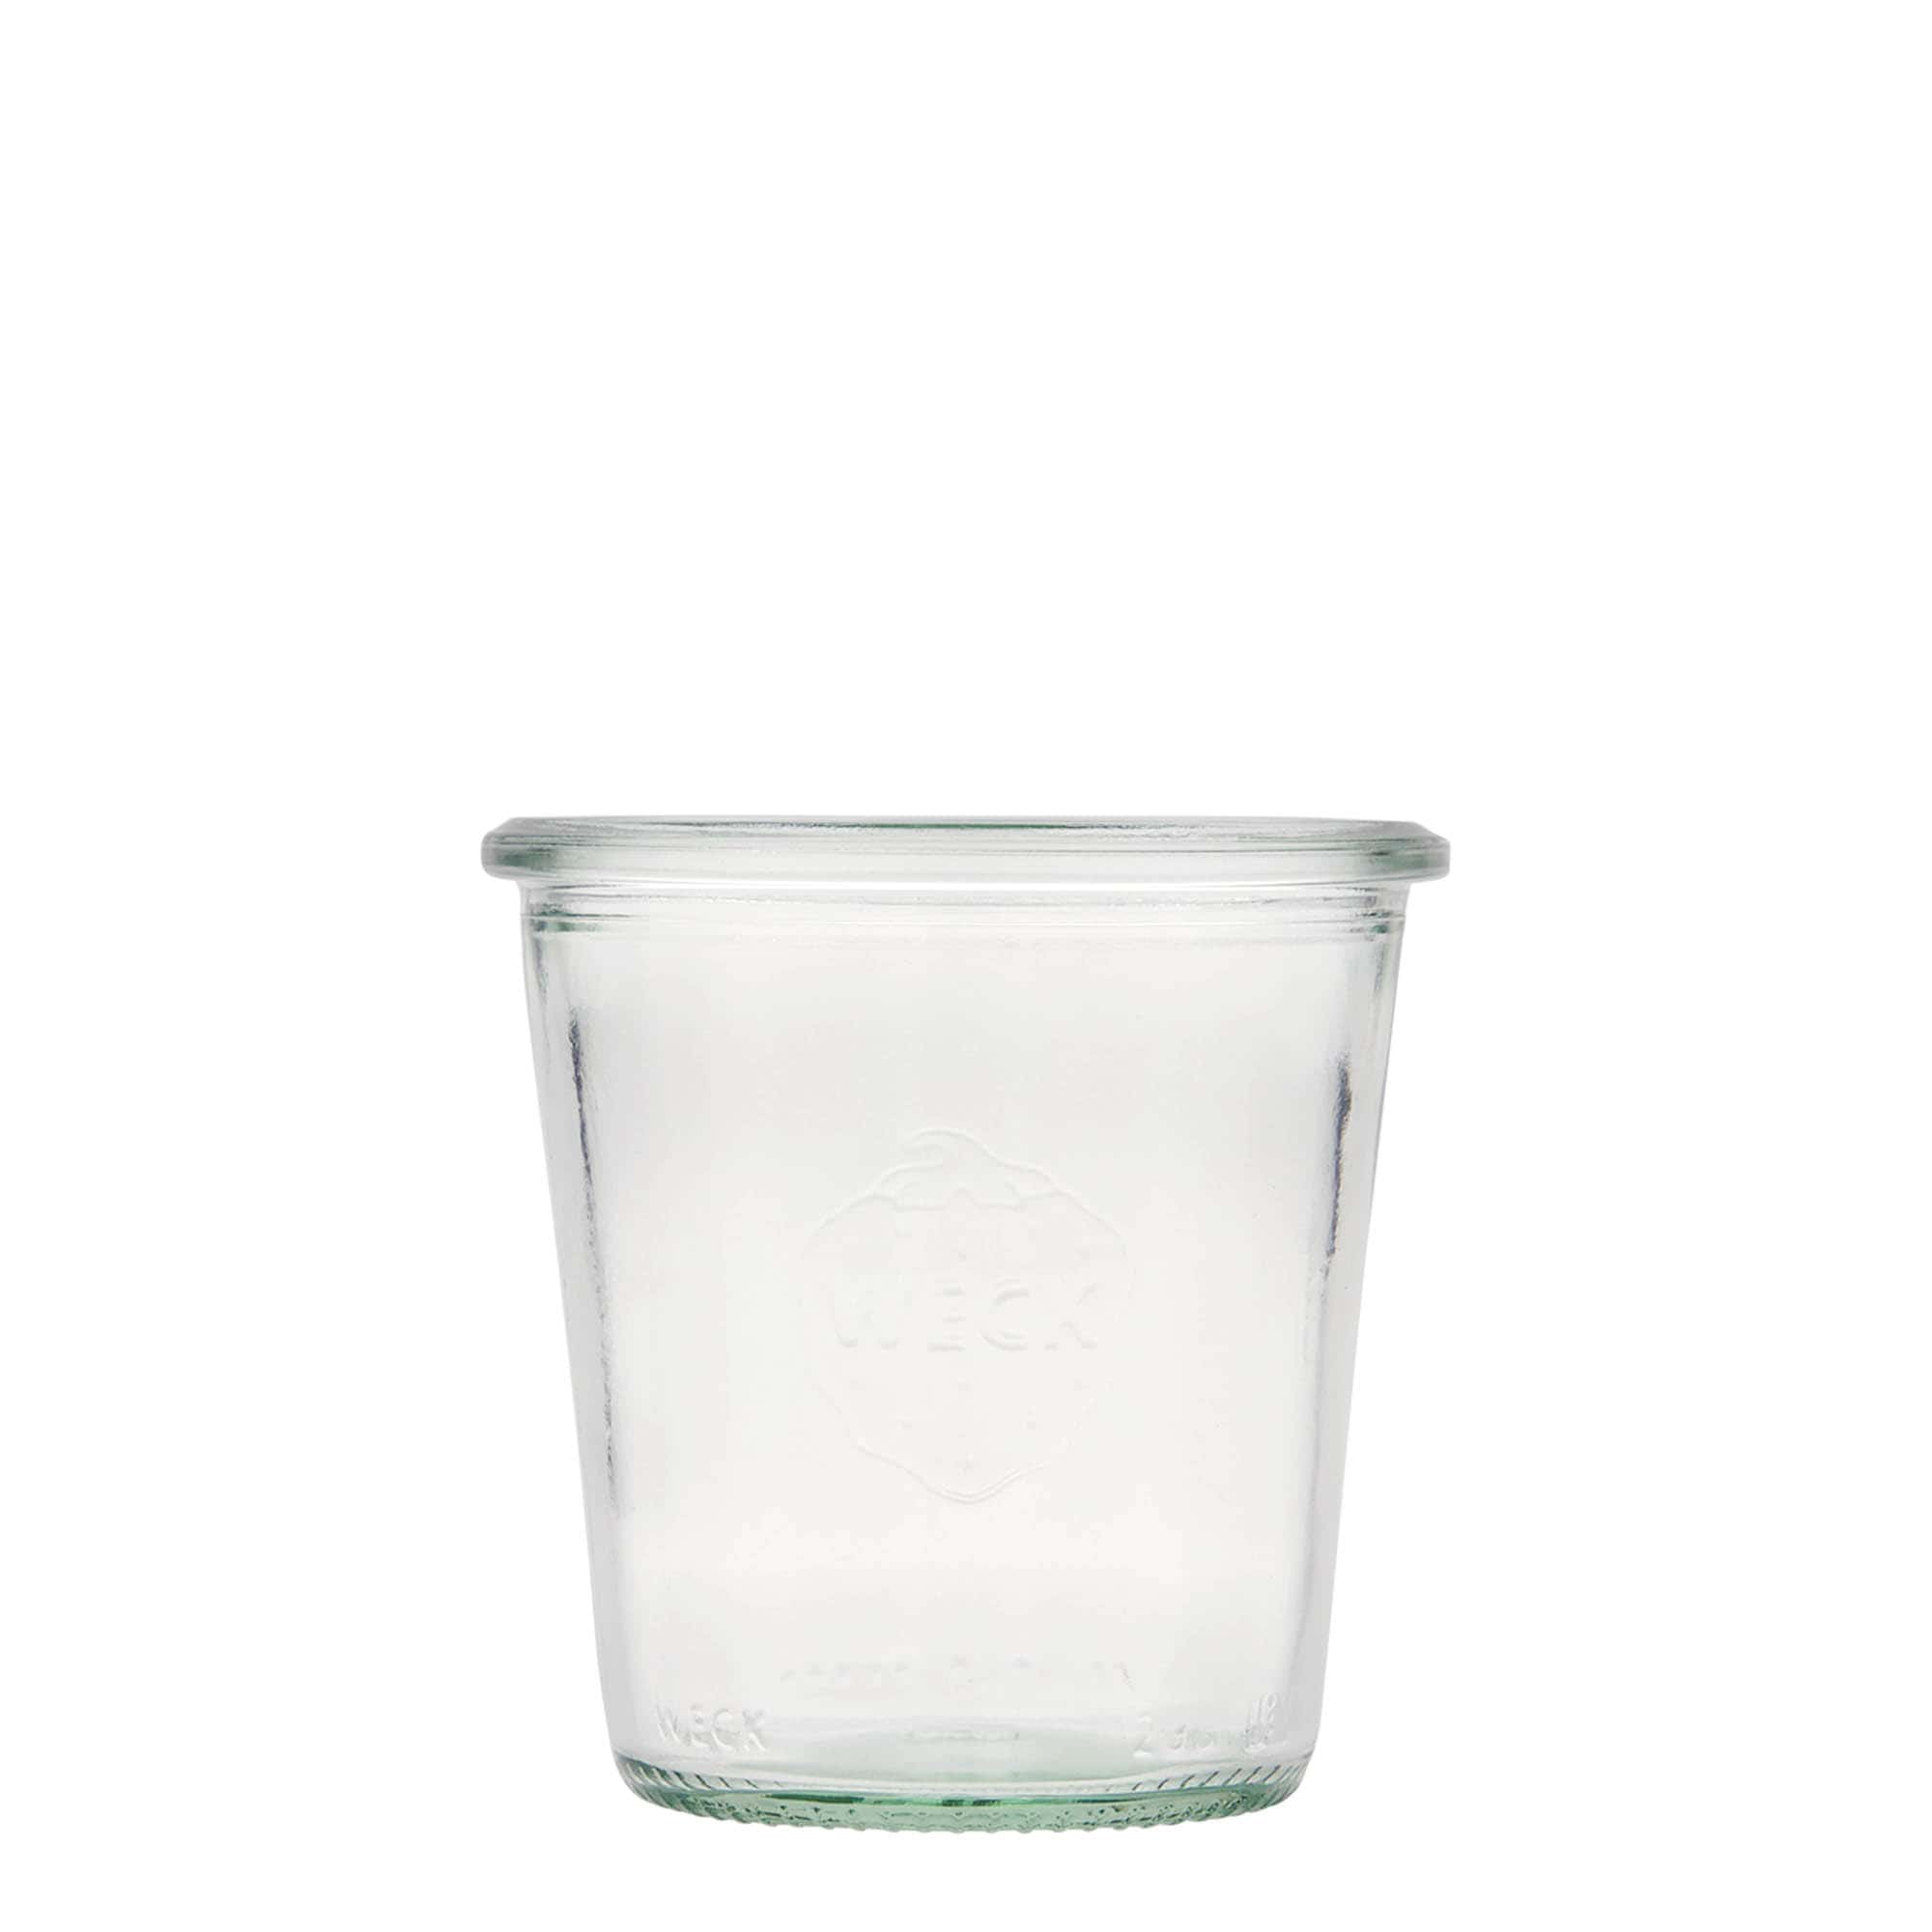 290 ml-es WECK befőttesüveg, szájnyílás: Kerek perem